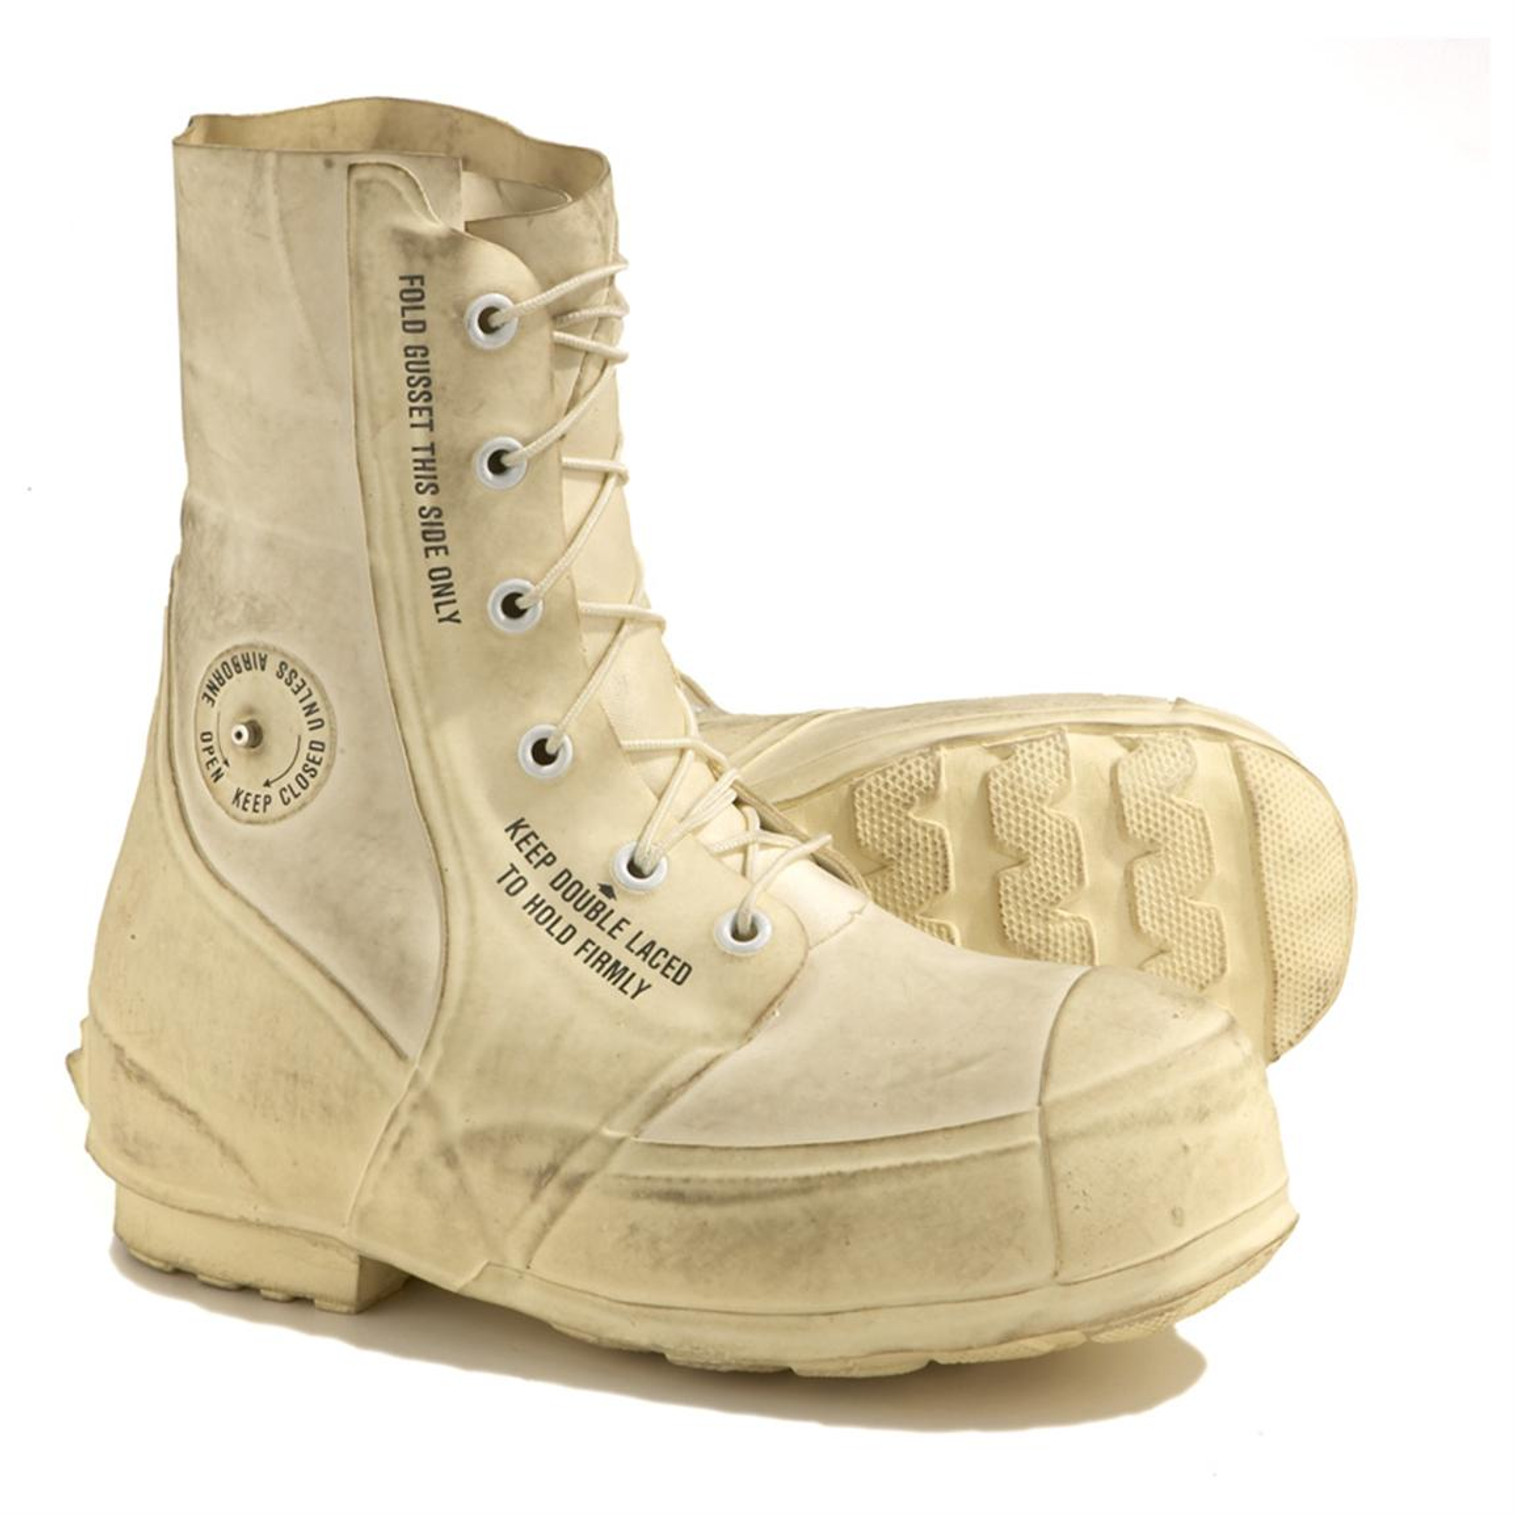 U.S. Armed Forces Bata Arctic Bunny Boots 